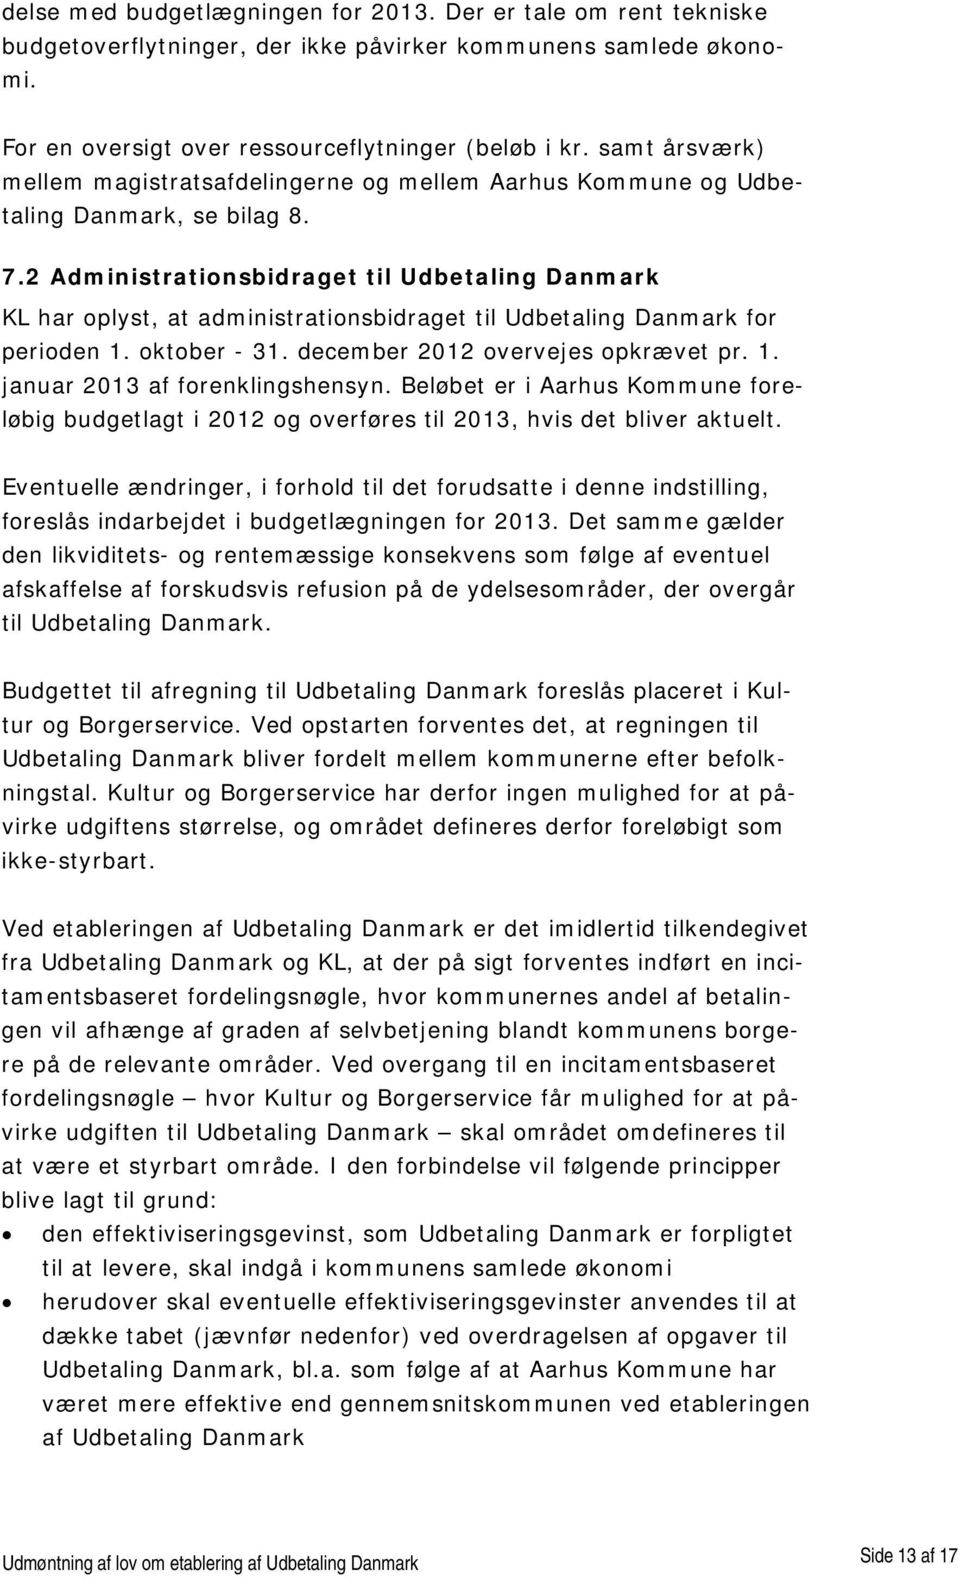 2 Administrationsbidraget til Udbetaling Danmark KL har oplyst, at administrationsbidraget til Udbetaling Danmark for perioden 1. oktober - 31. december 2012 overvejes opkrævet pr. 1. januar 2013 af forenklingshensyn.